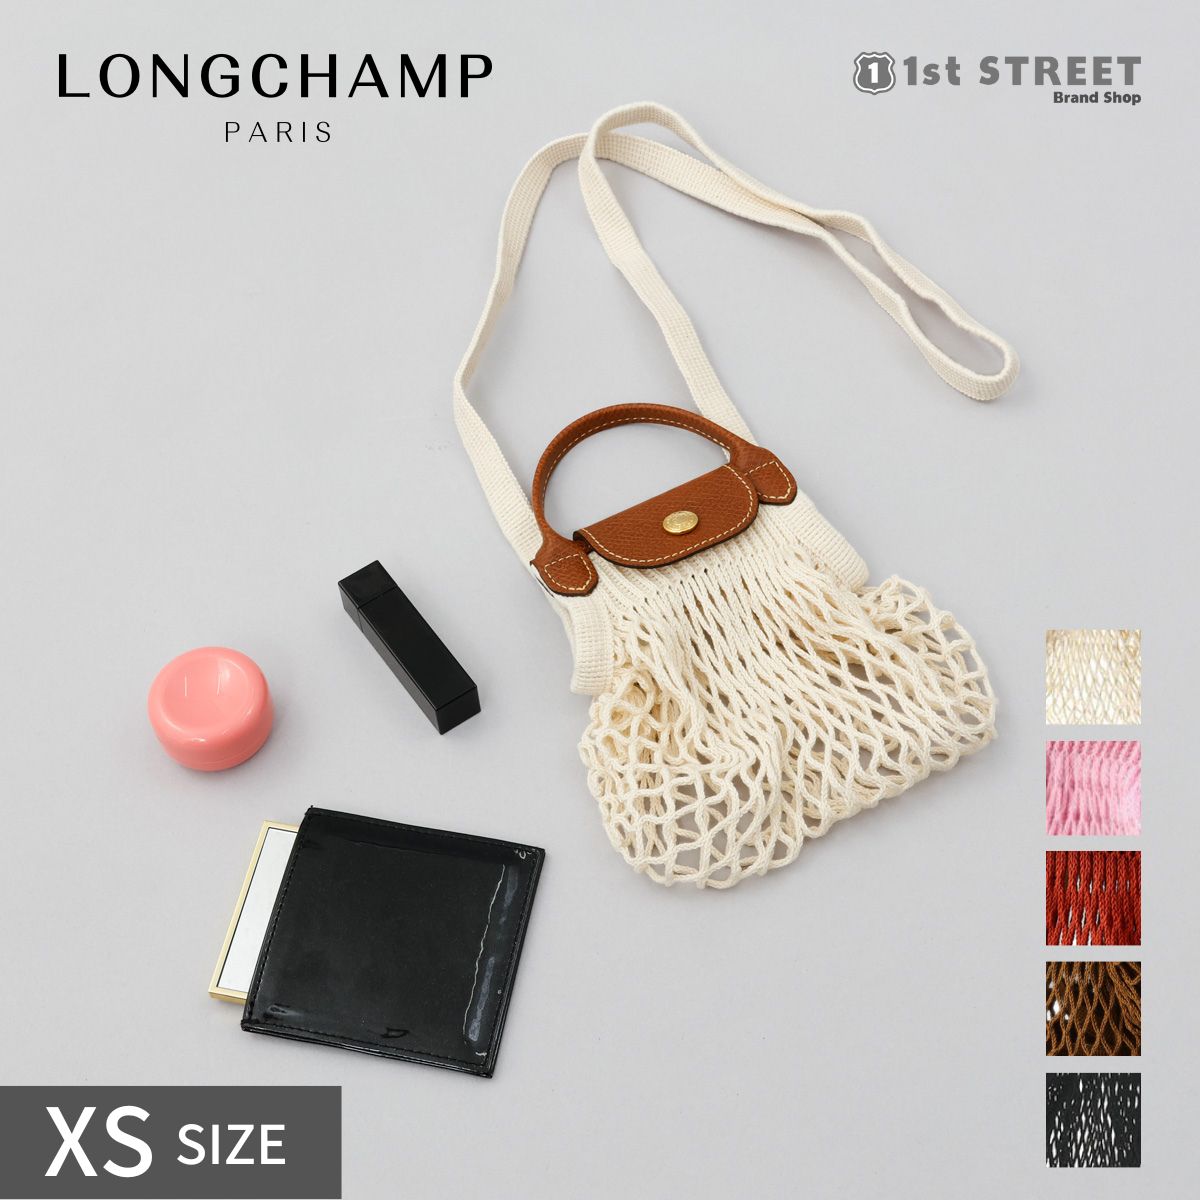 LONGCHAMP PARIS LONGCHAMP Le Pliage Filet XS Crossbody Bag BLUSH